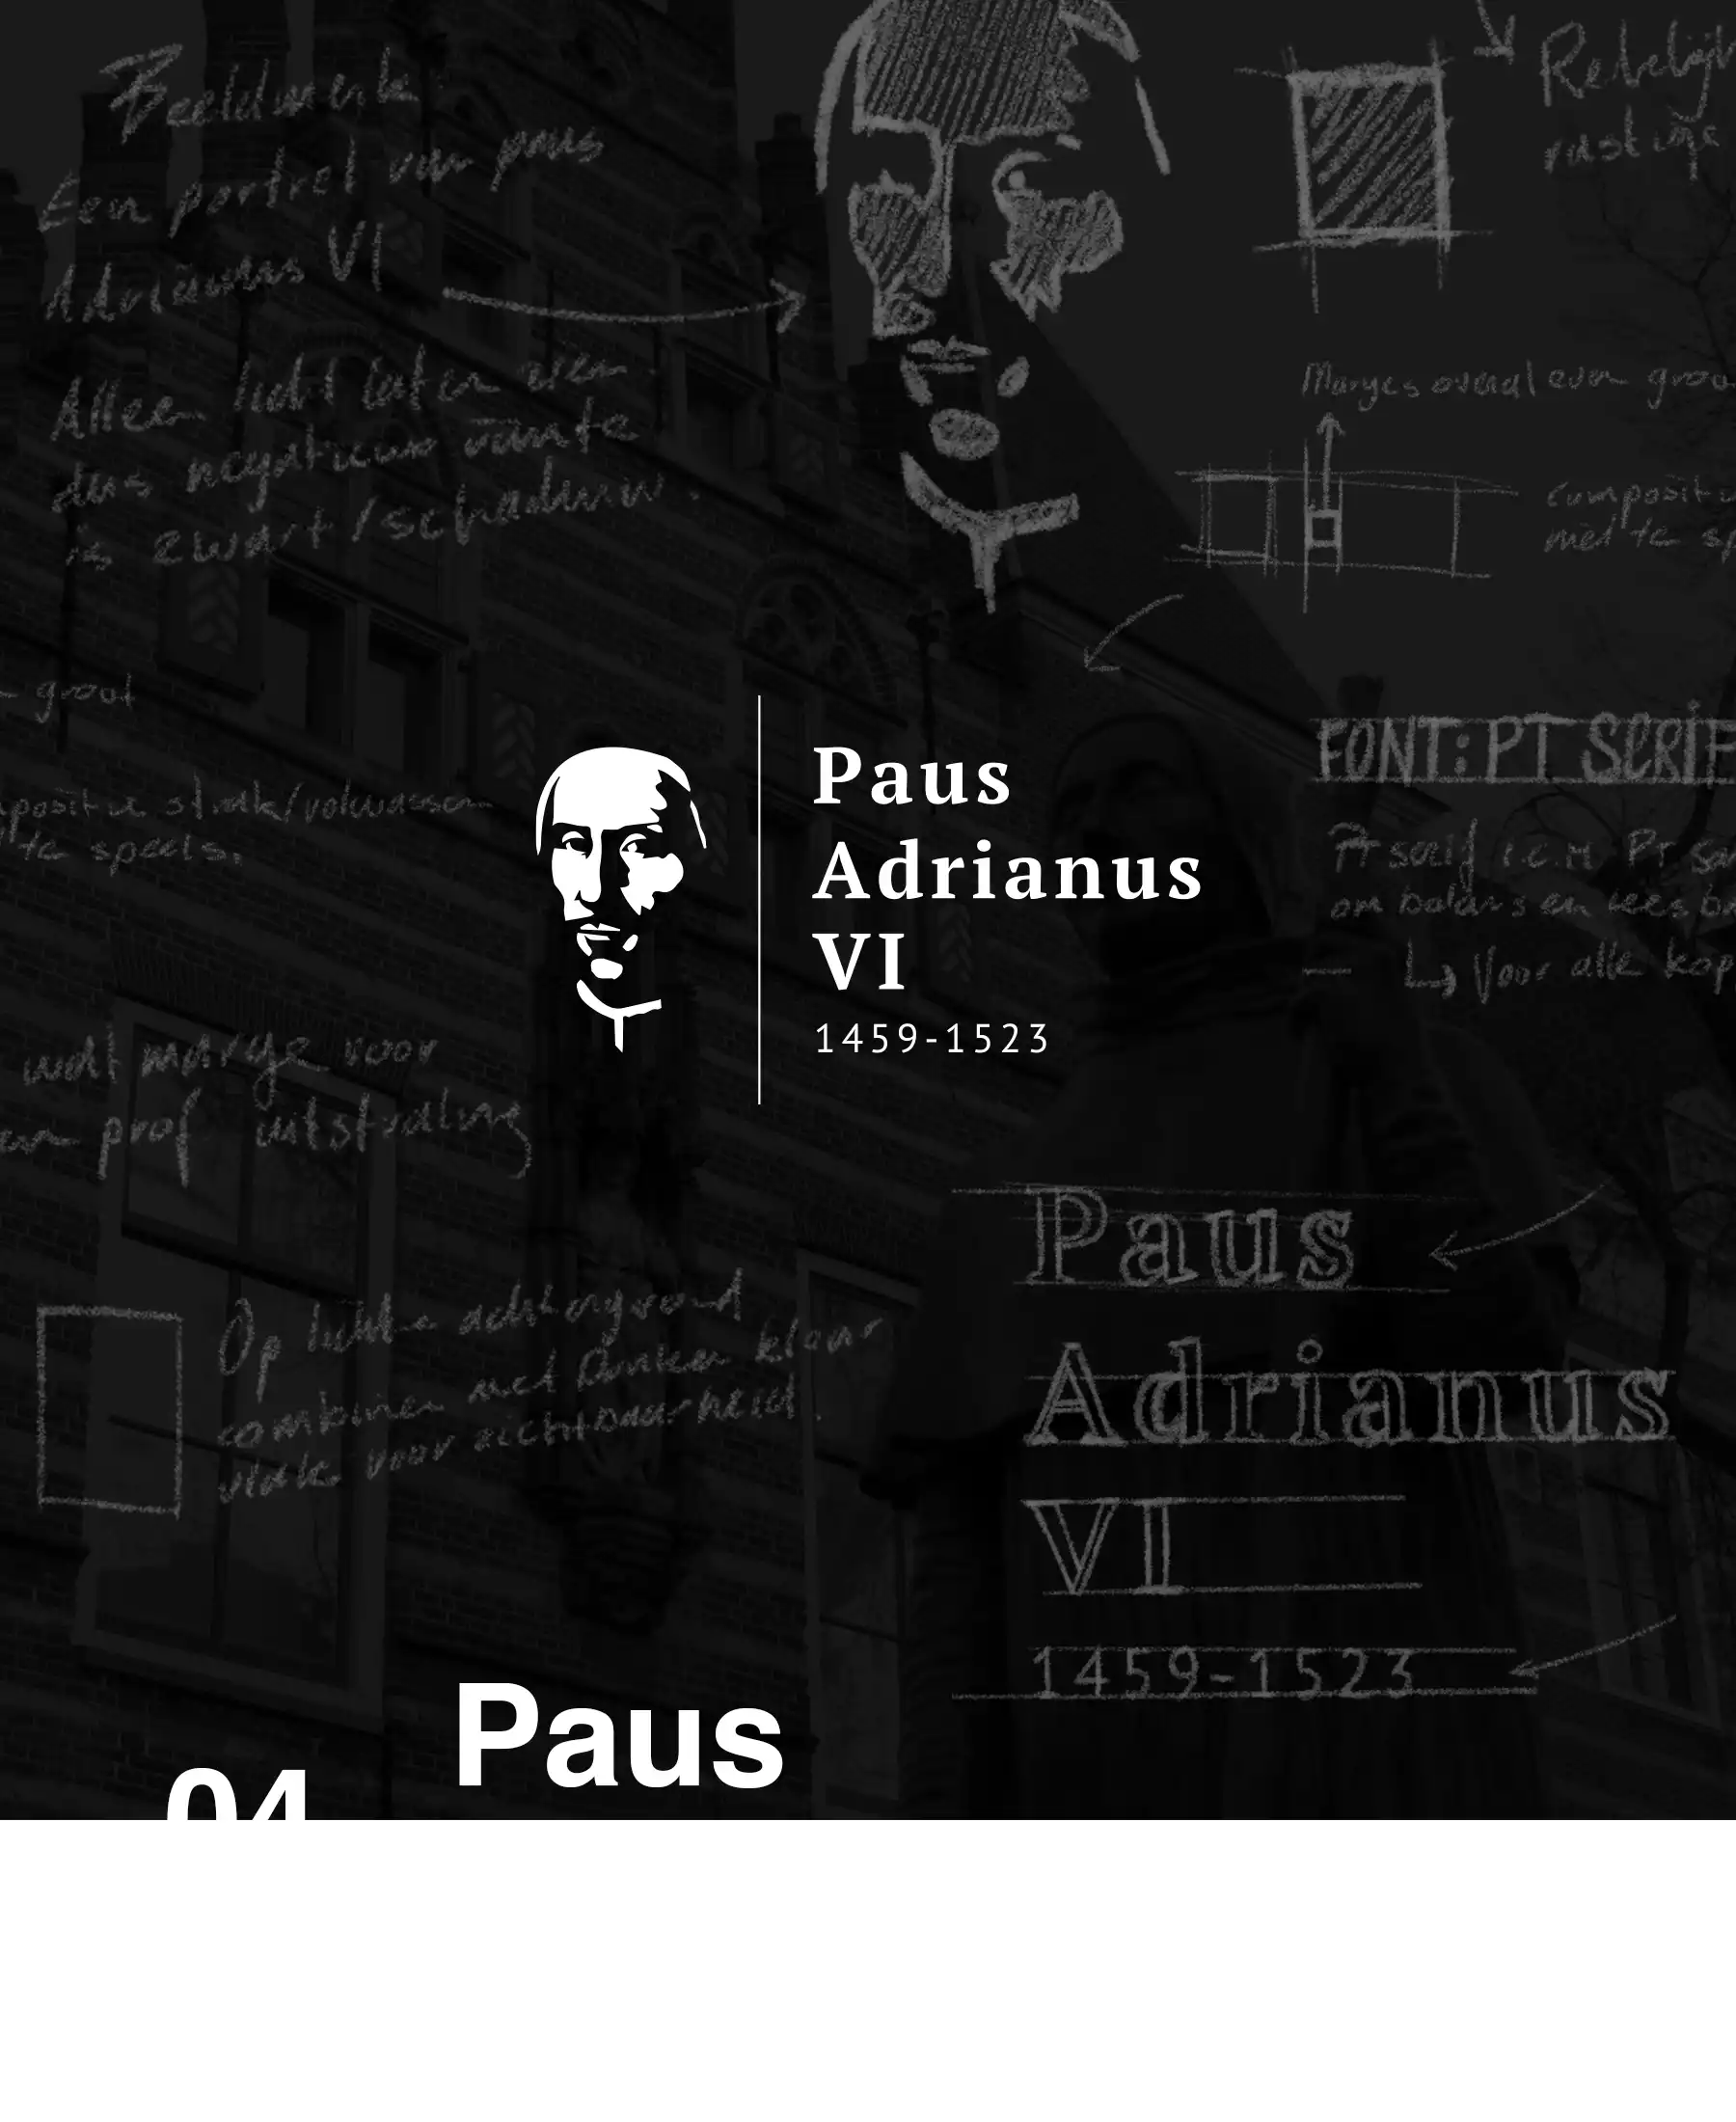 Paus Adrianus VI - case